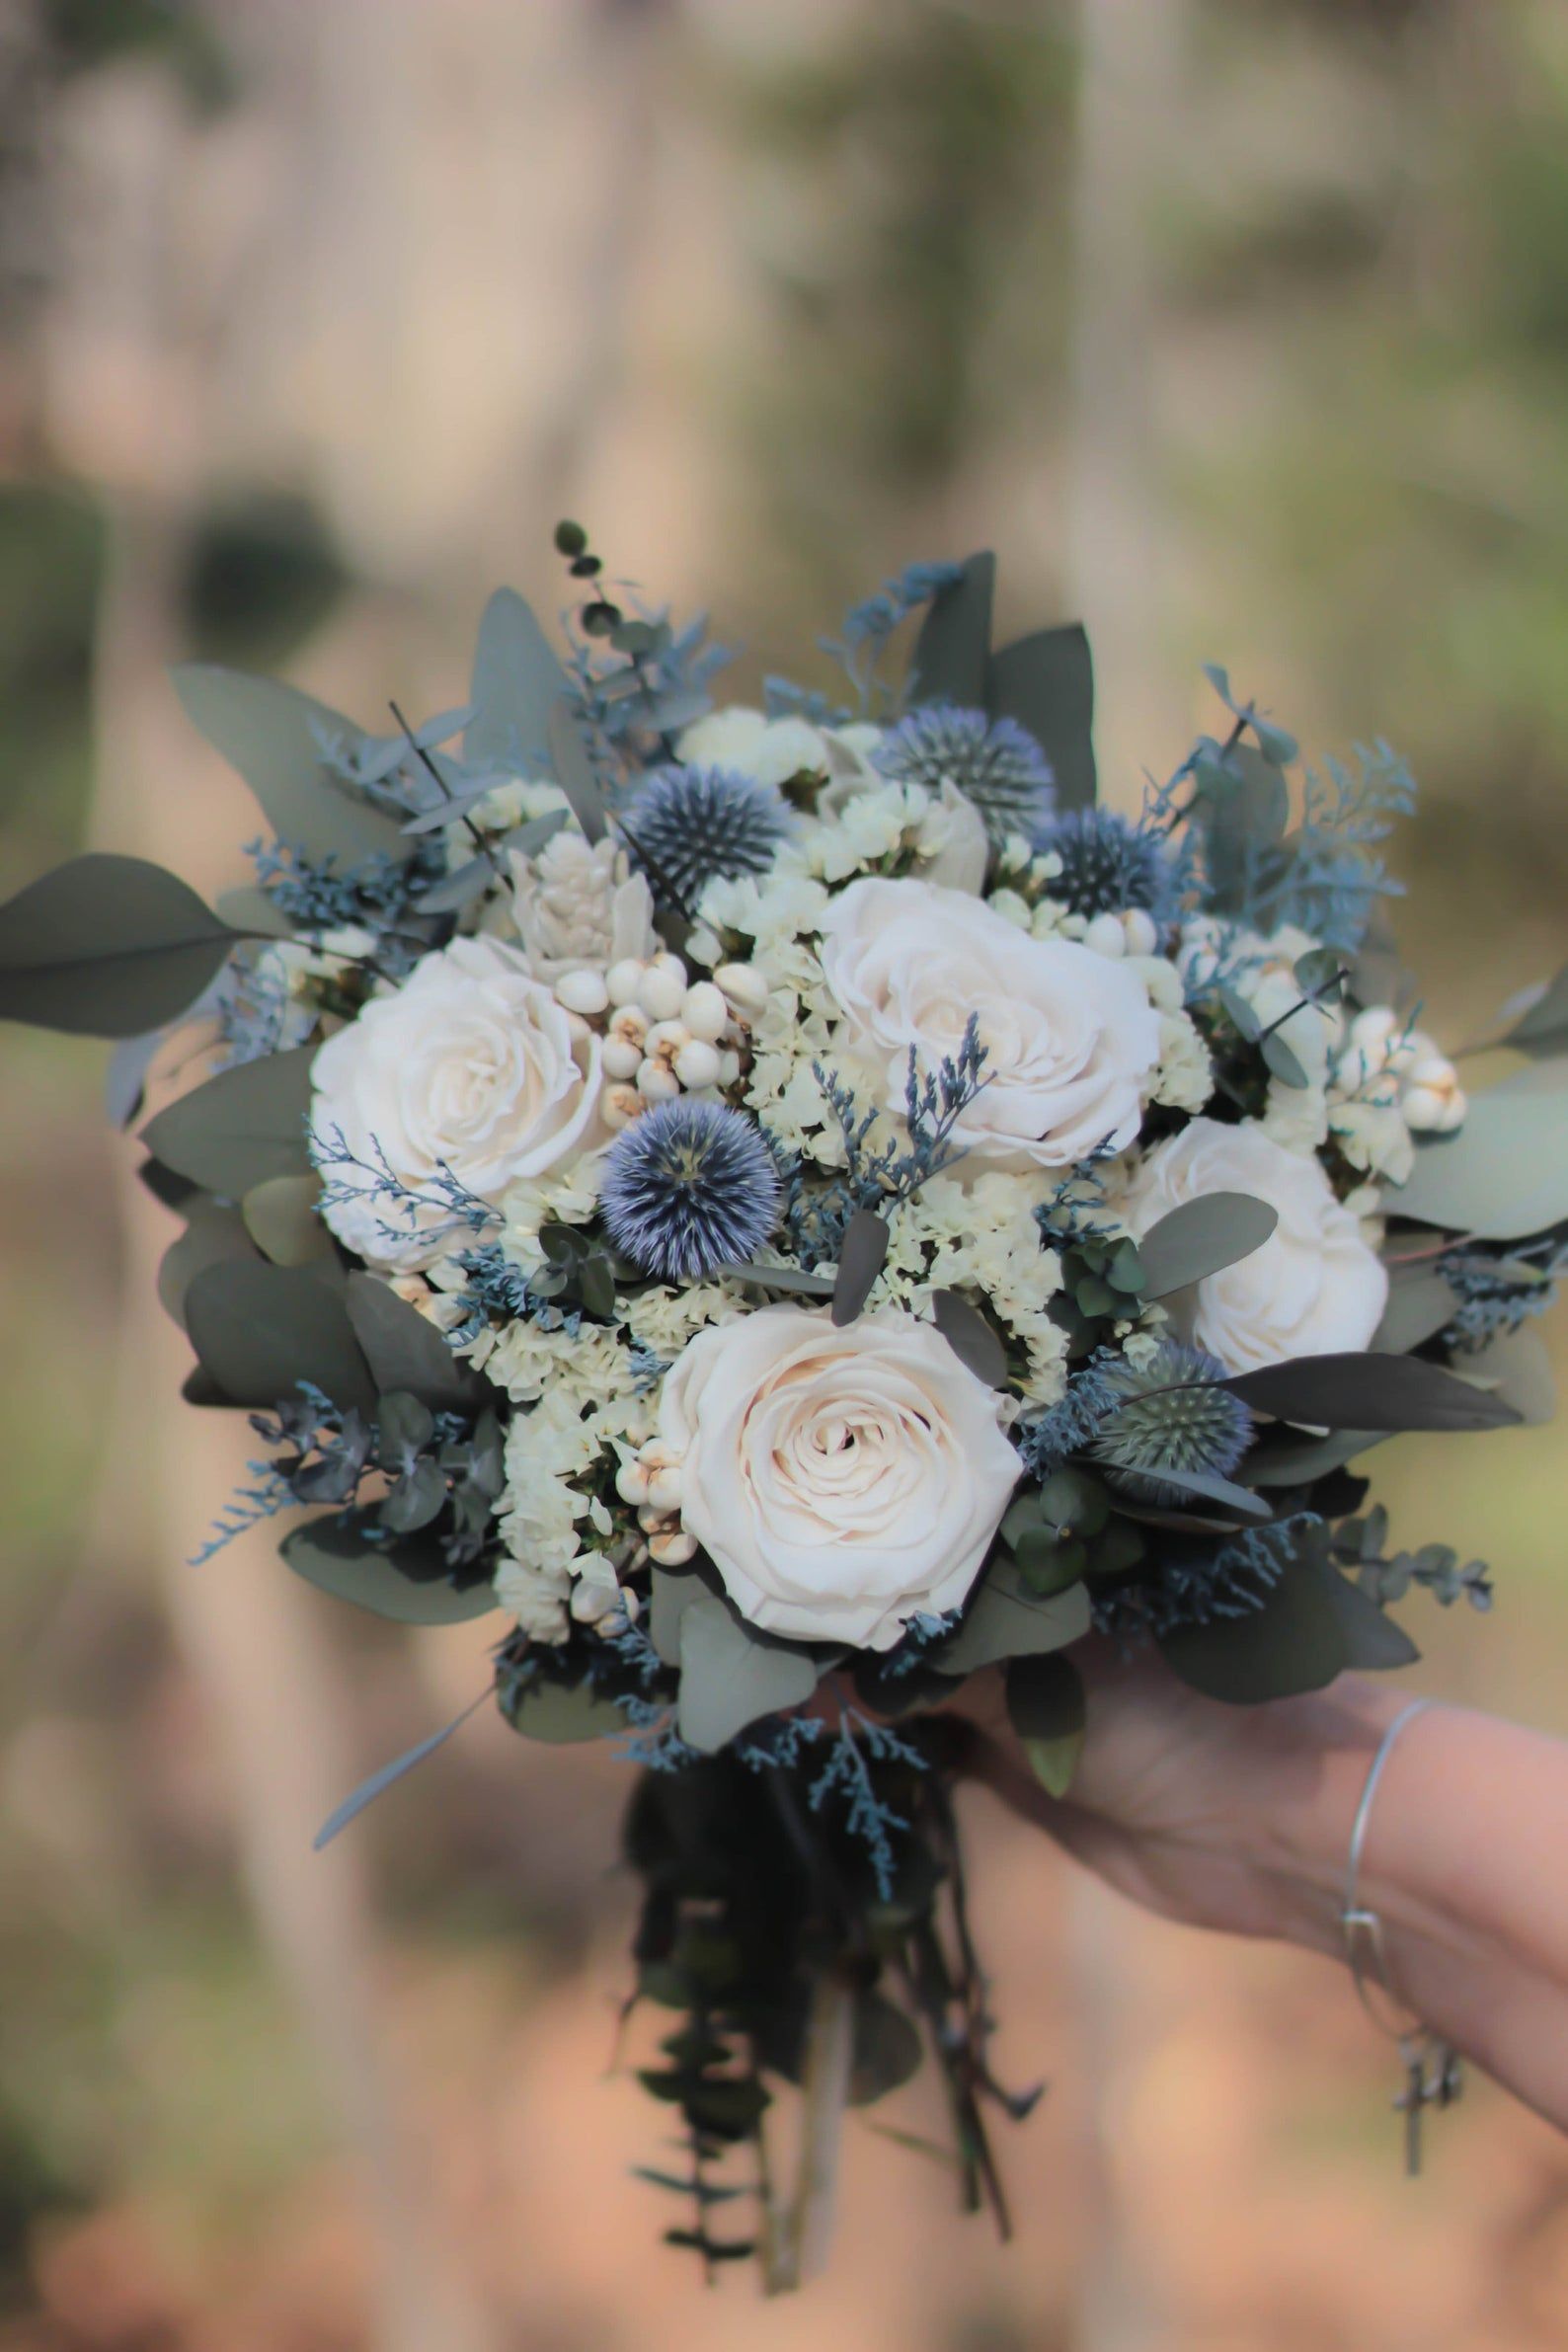 Dusty Blue Bouquet | Blue and Gray Bouquet | Blue Bouquet | White Bouquet | Dried Flower Bouquet | Wedding Bouquet | April Collection -   19 wedding Blue bouquet ideas